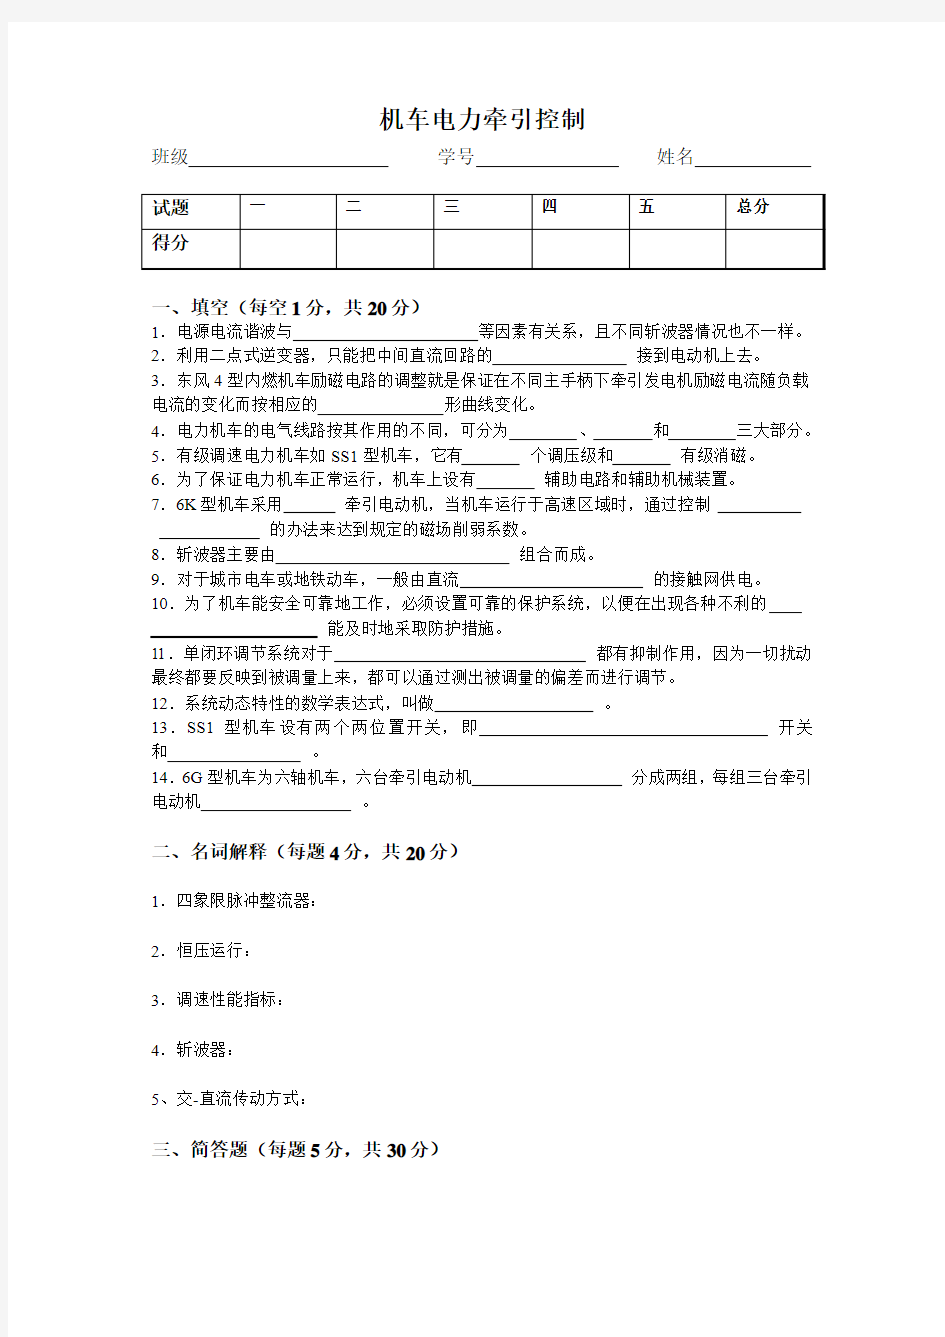 上海交通大学2010级电力牵引控制系统试卷及答案